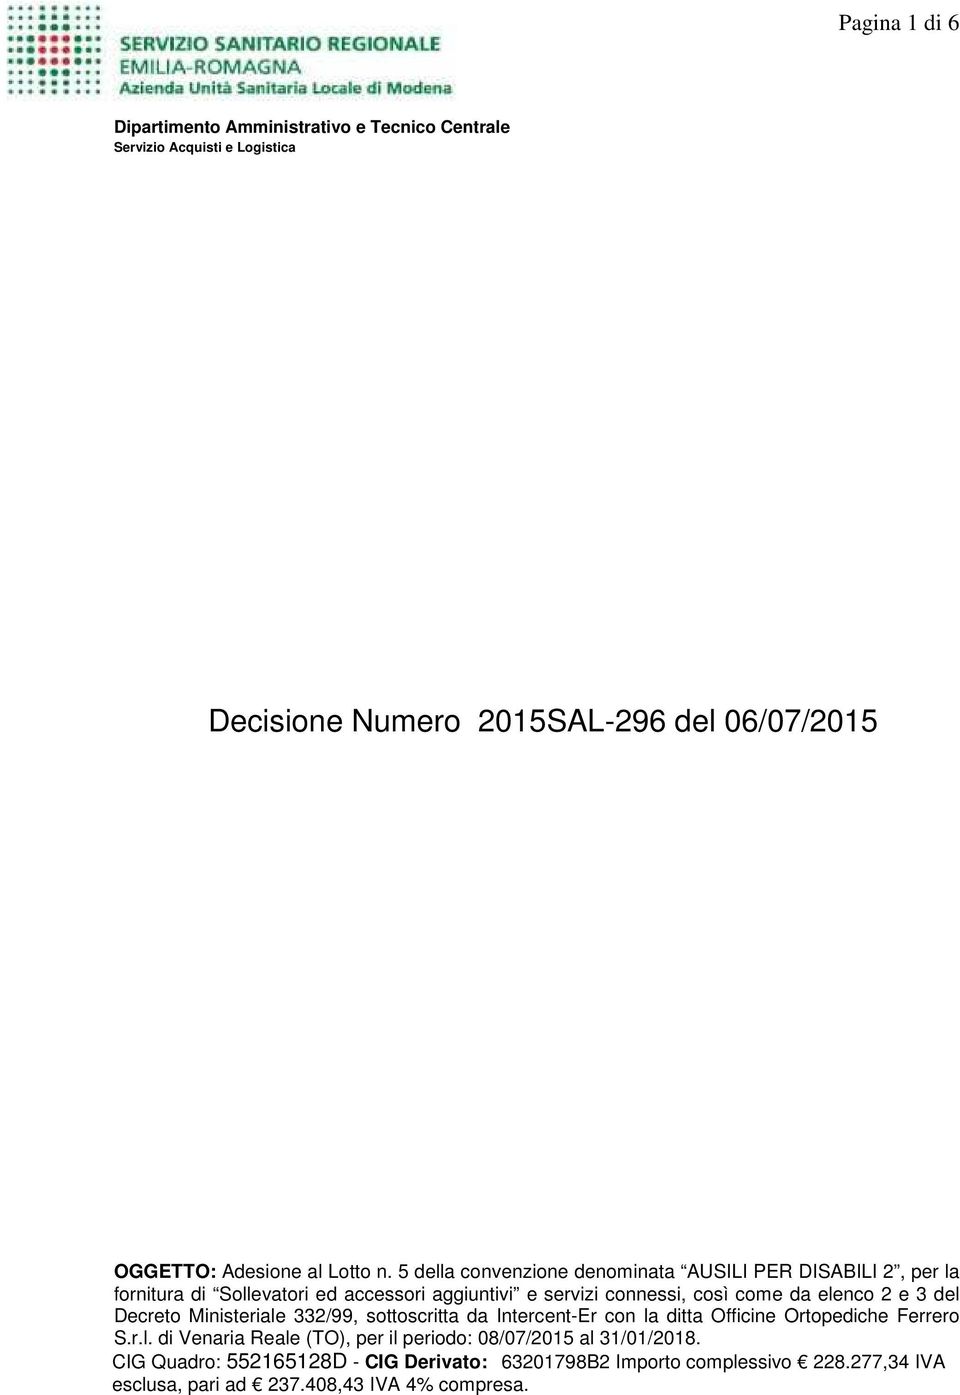 elenco 2 e 3 del Decreto Ministeriale 332/99, sottoscritta da Intercent-Er con la ditta Officine Ortopediche Ferrero S.r.l. di Venaria Reale (TO), per il periodo: 08/07/2015 al 31/01/2018.